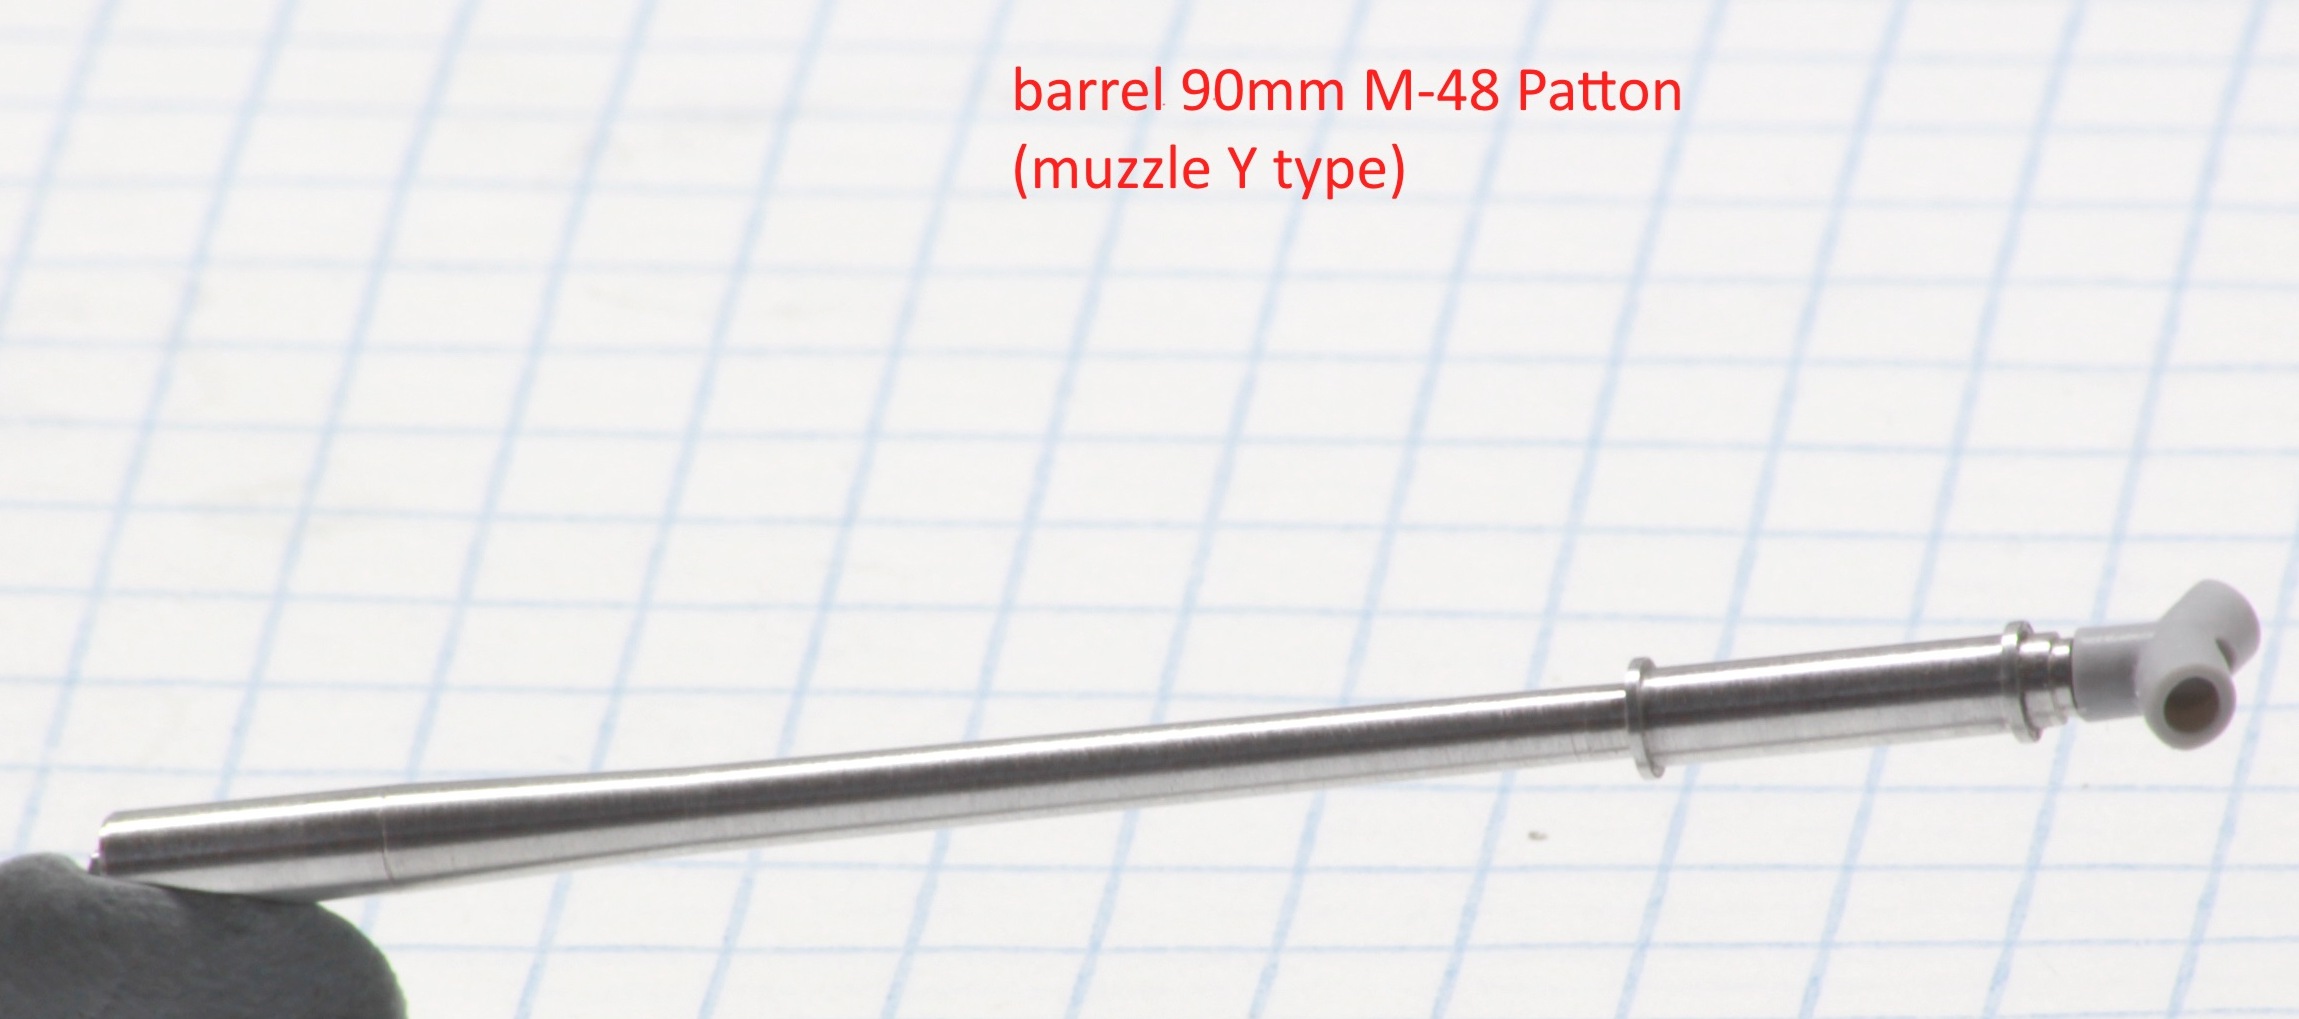 90mm M-48 Patton barrel with Y muzzle